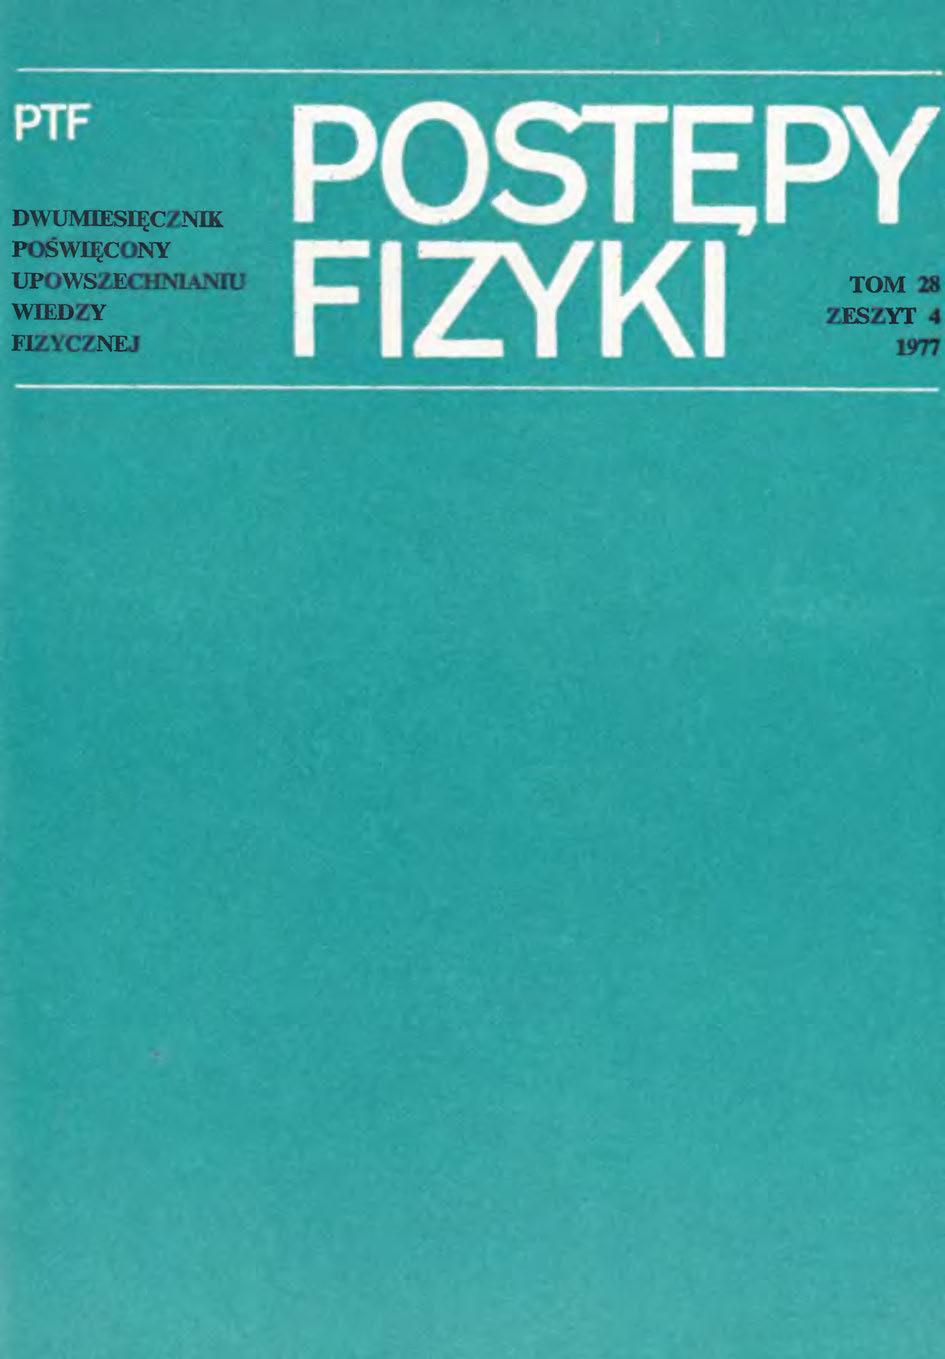 Postępy Fizyki 28 (4) 1977